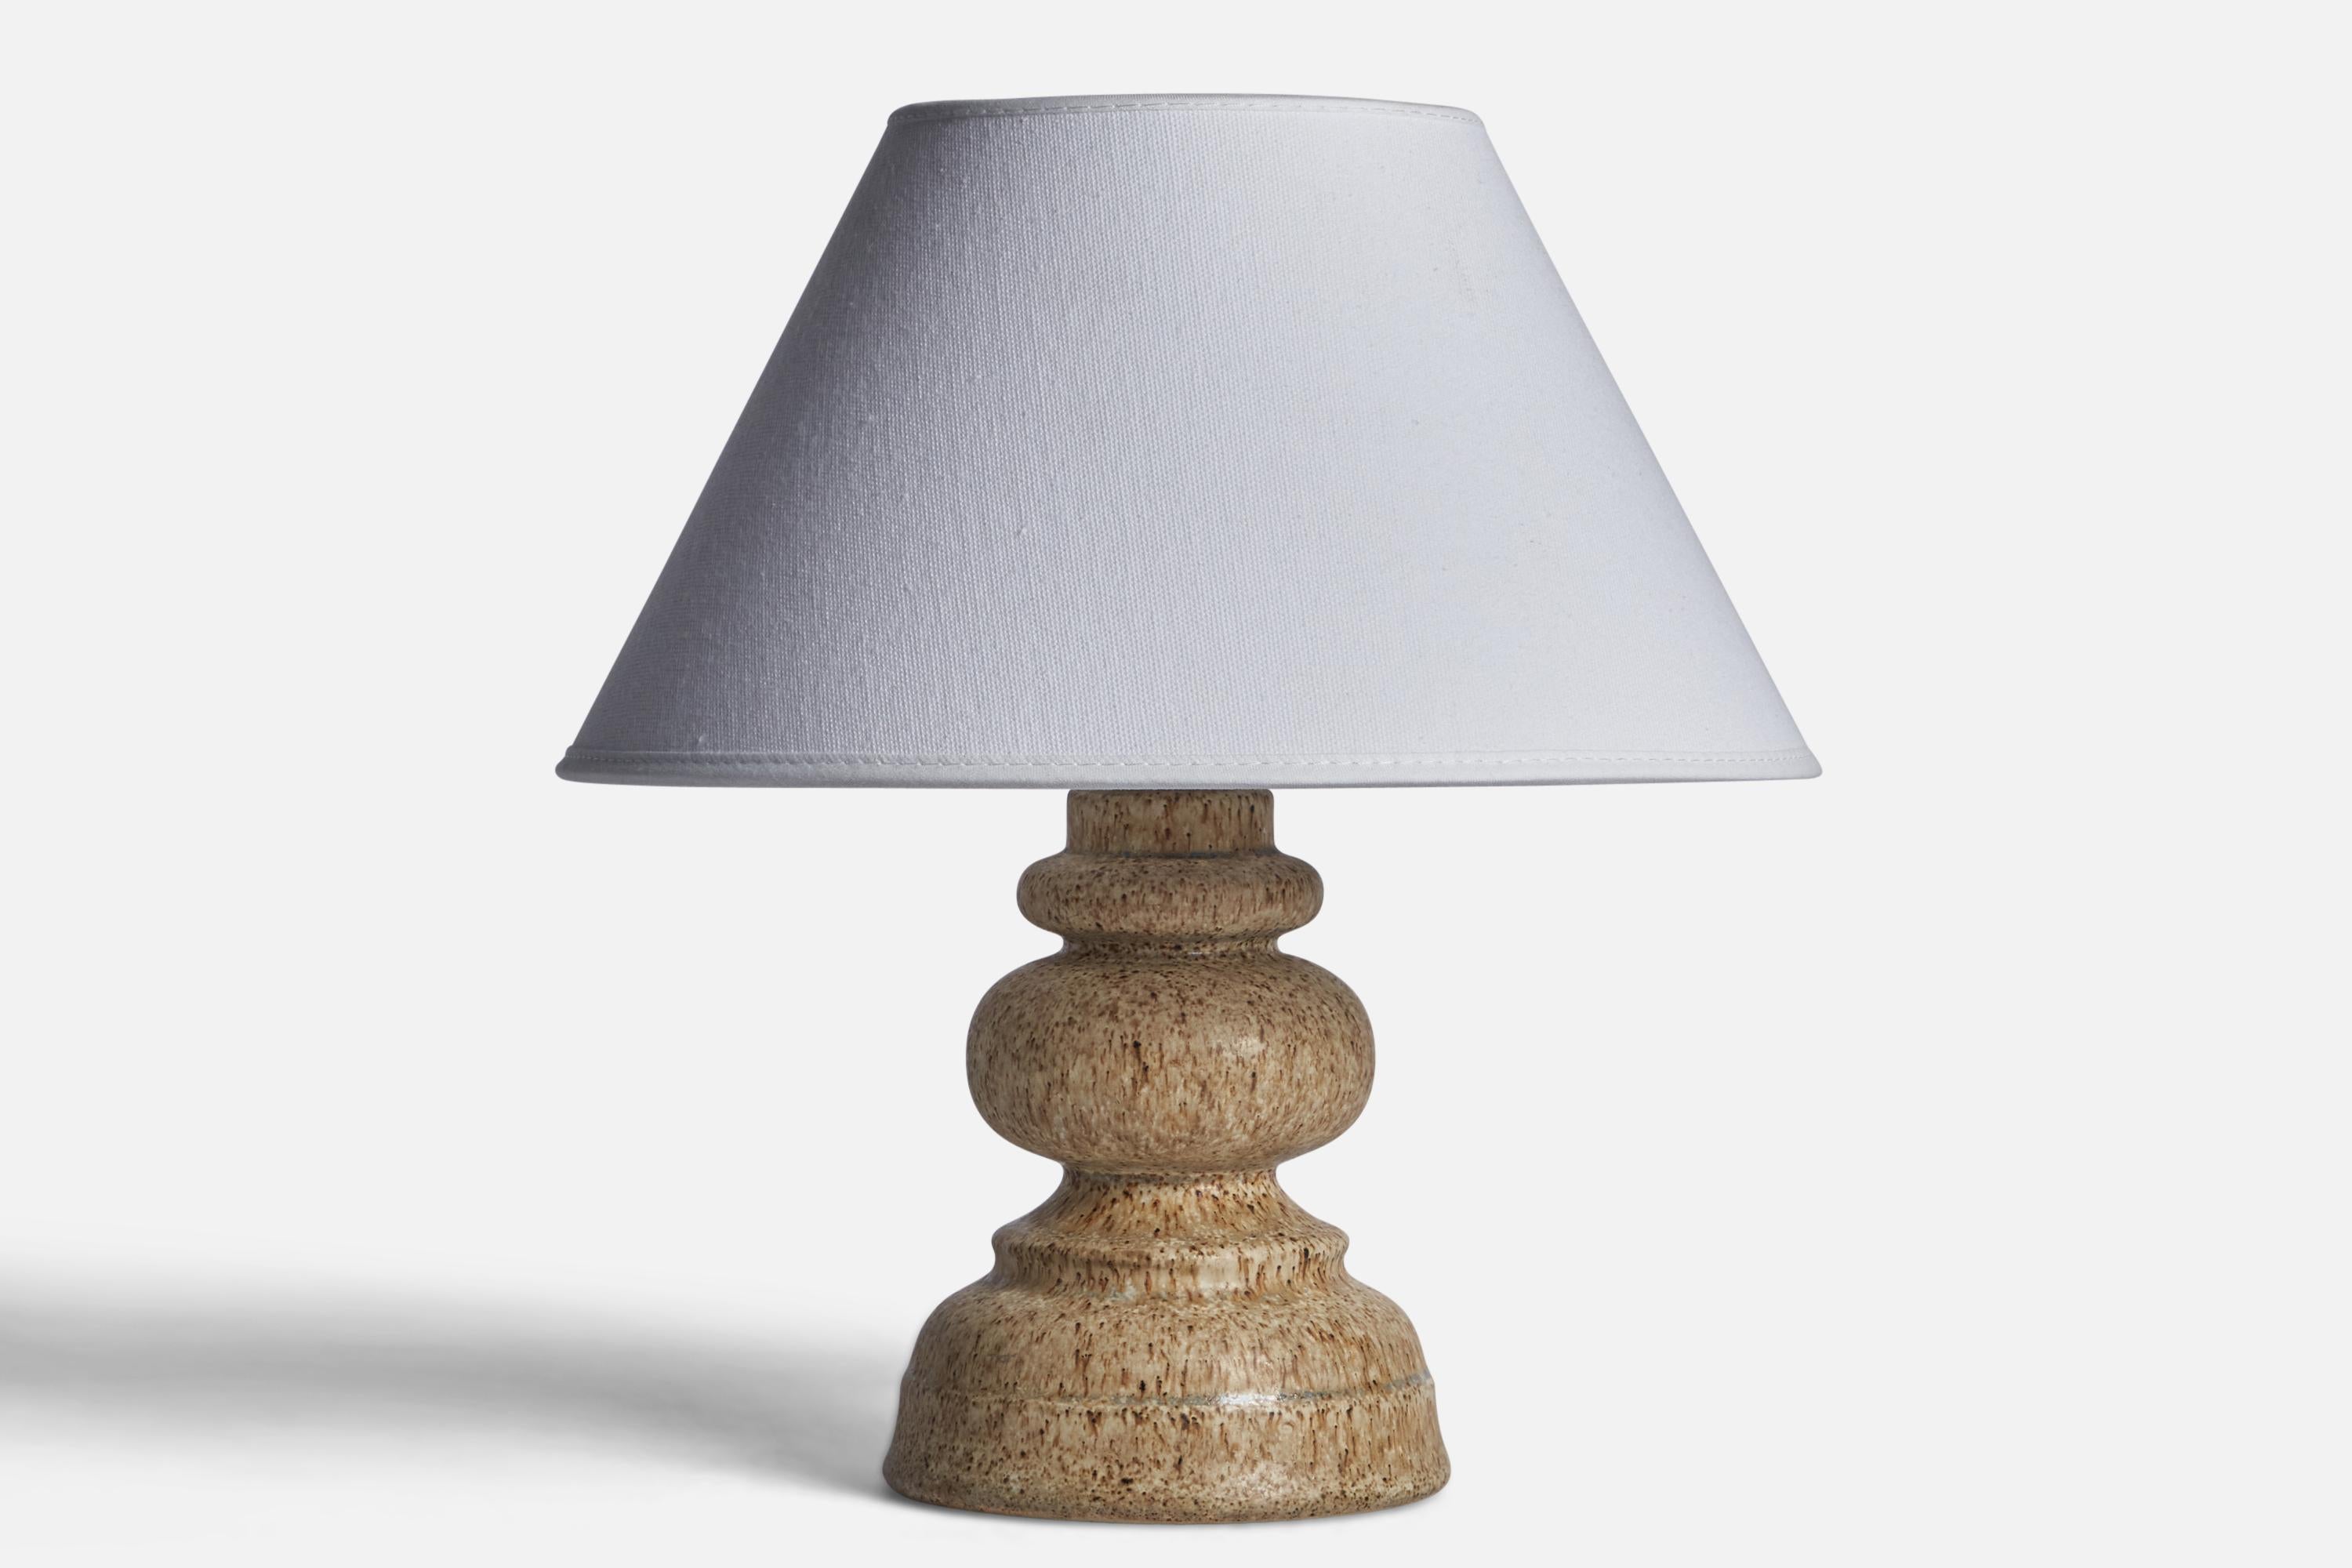 Lampe de table en grès émaillé gris produite par Ego Stengods, Suède, c. 1960.

Dimensions de la lampe (pouces) : 7.75